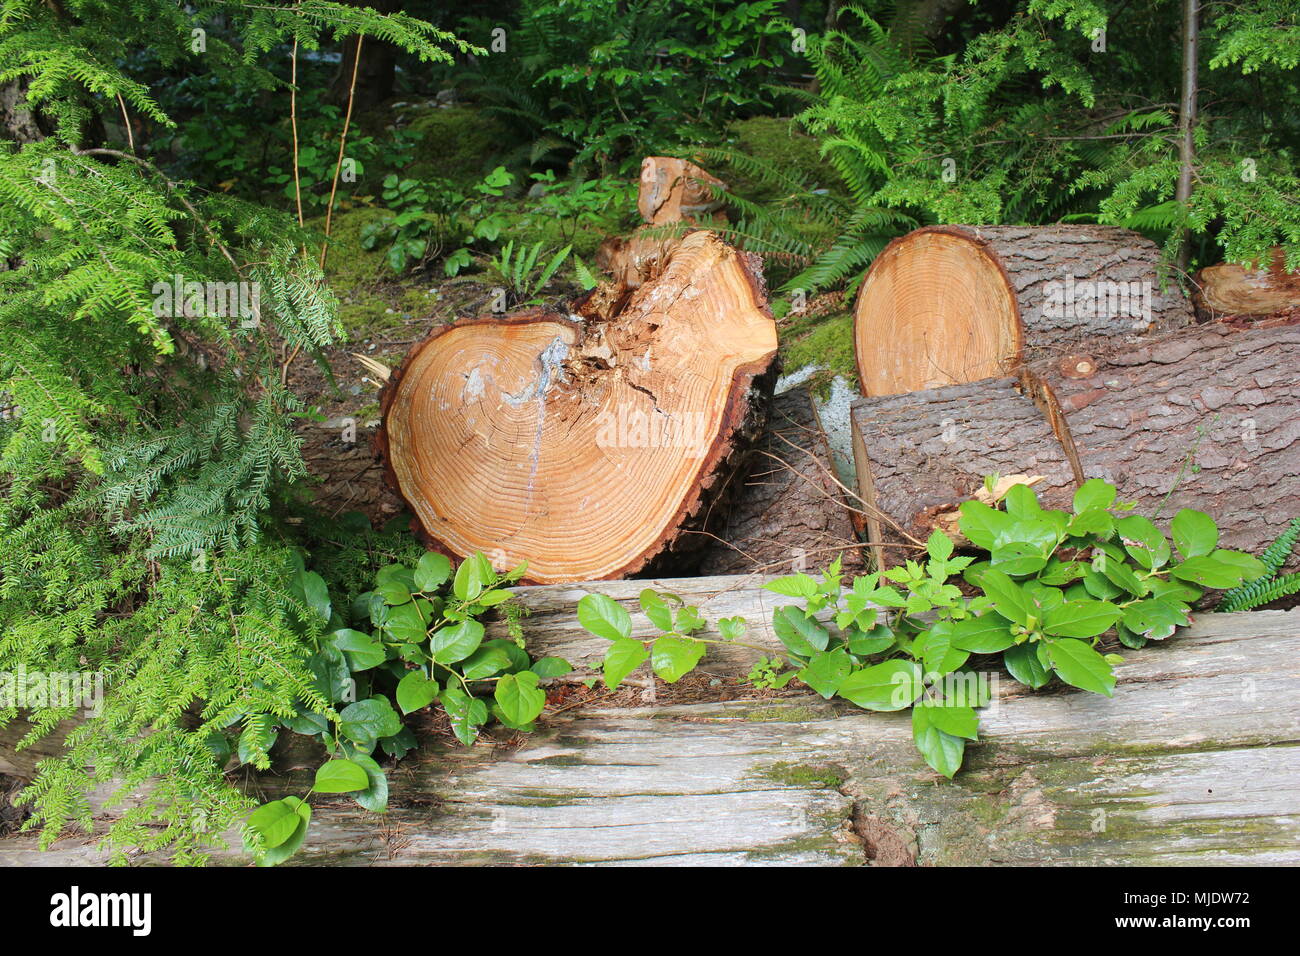 Tronco de árbol cortado para mostrar capas y su edad. Parque Capilano, Vancouver, BC, Canadá. Foto de stock